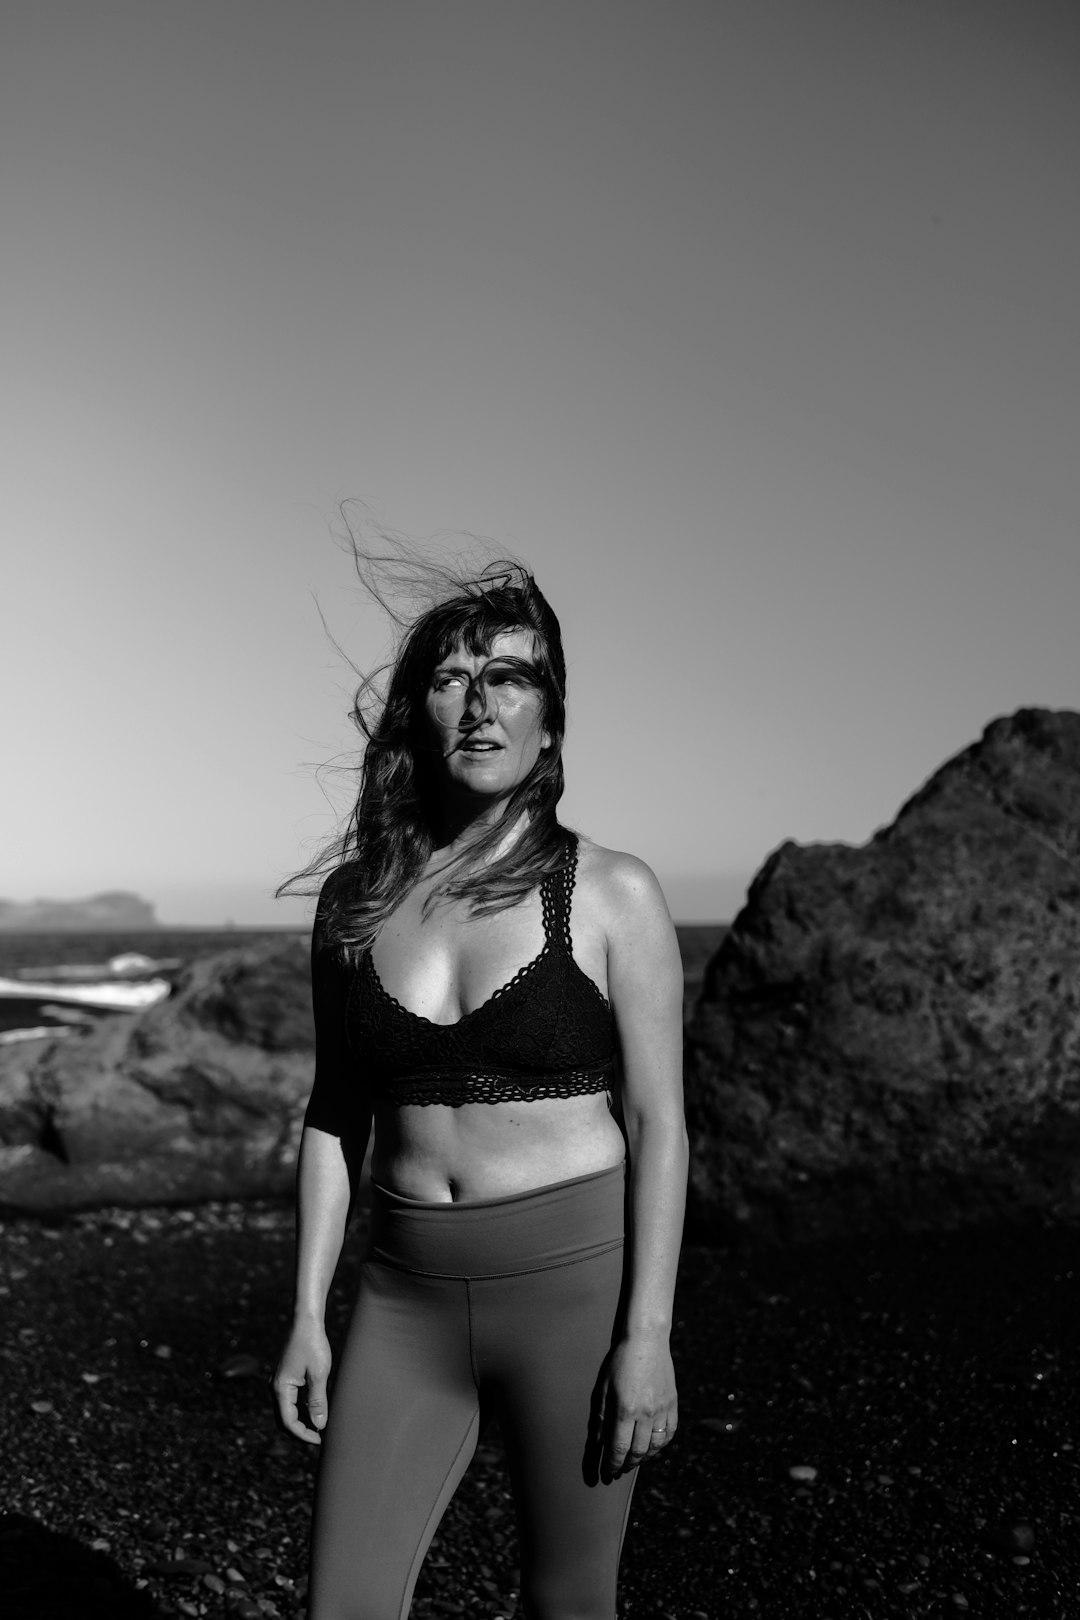 grayscale photo of woman in bikini top